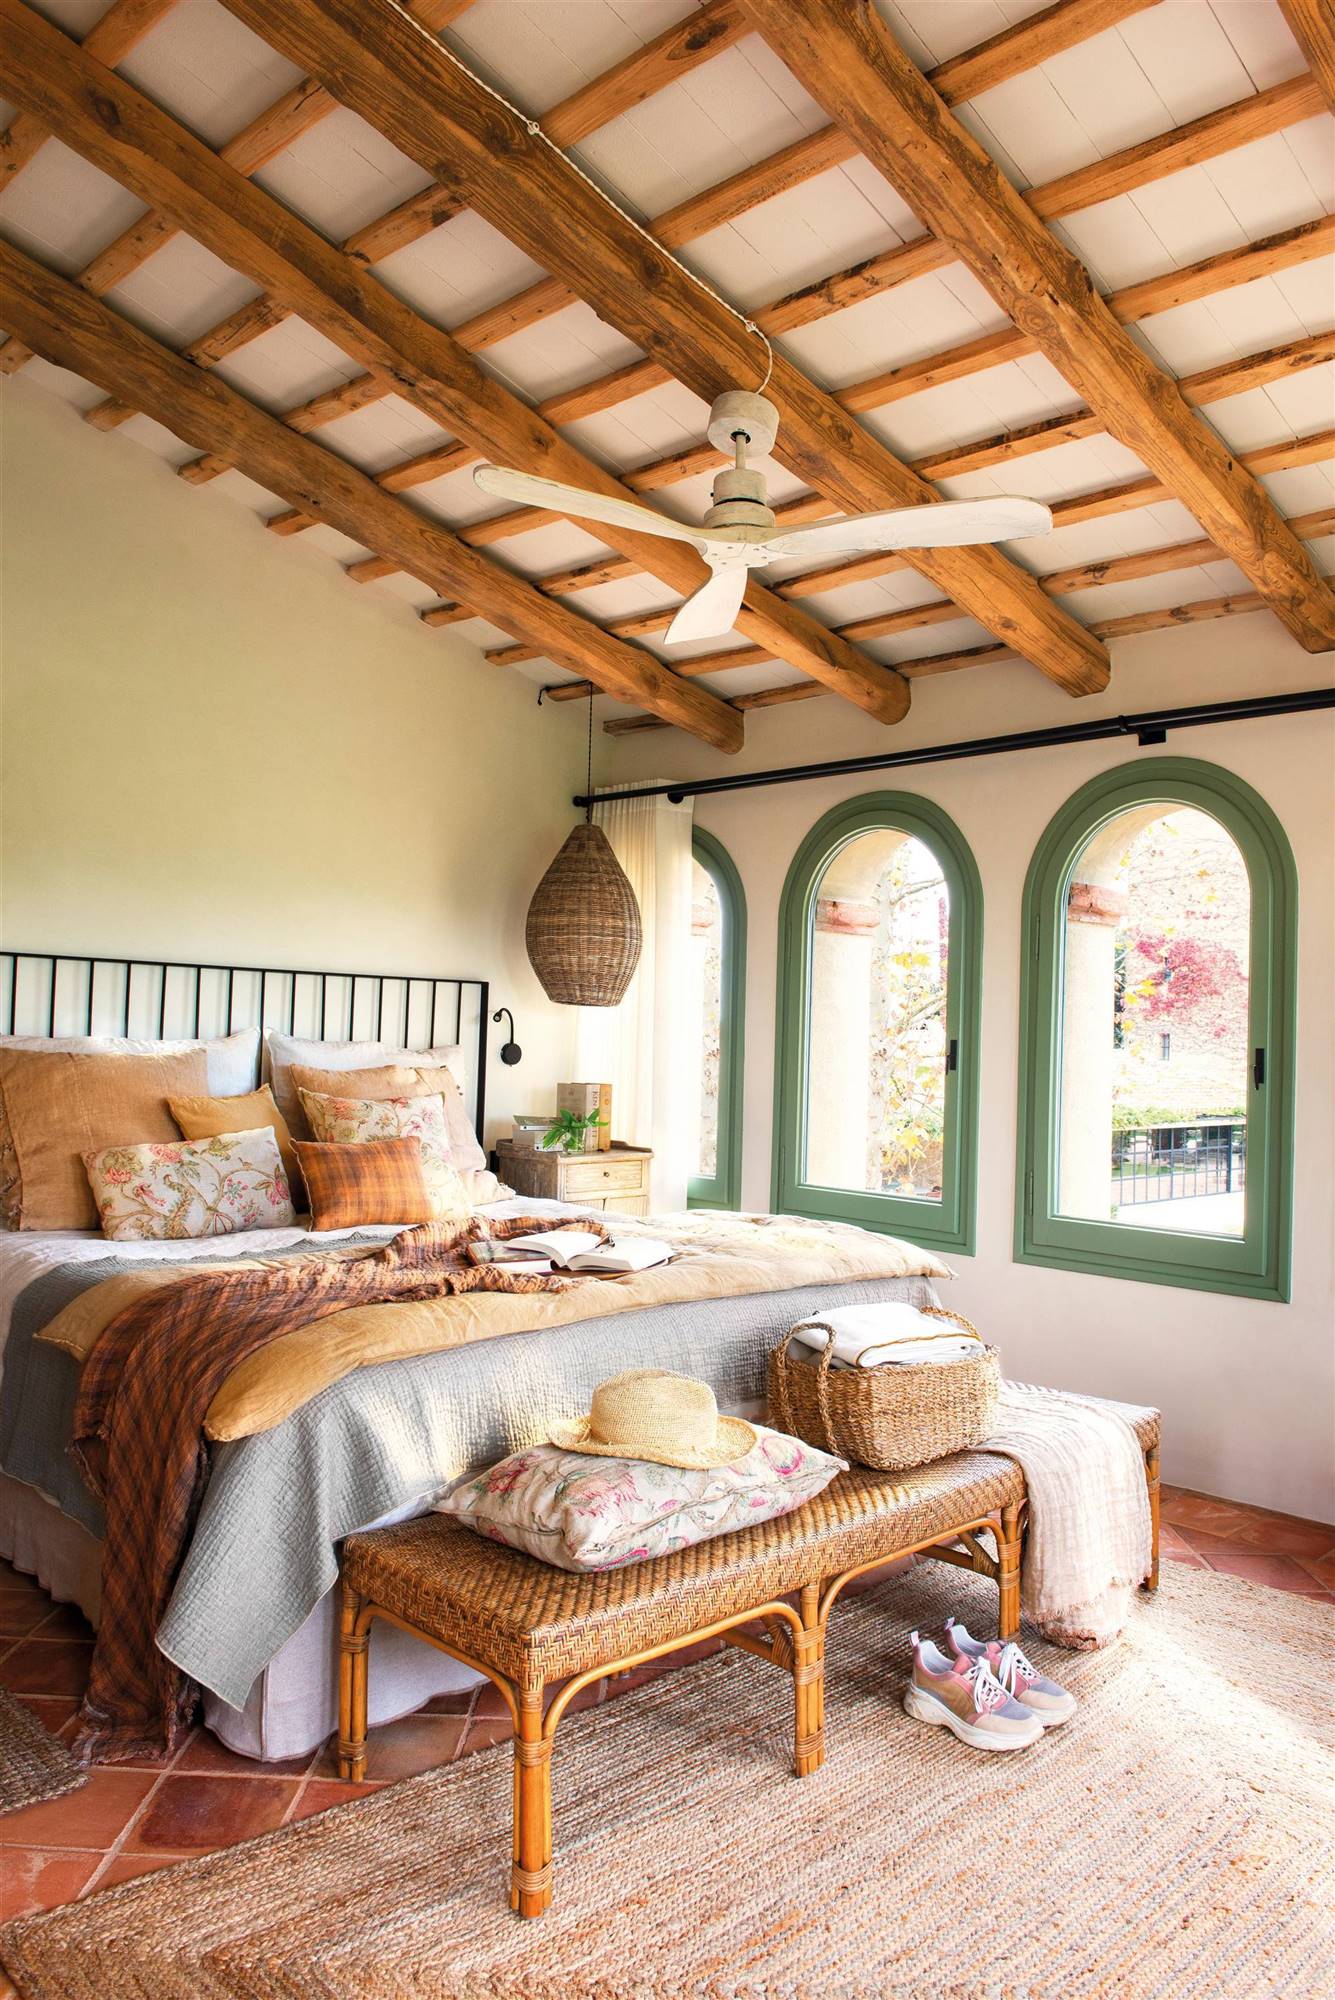 Dormitorio rústico con techos con vigas, cabecero de hierro y adornos en fibra natural. 